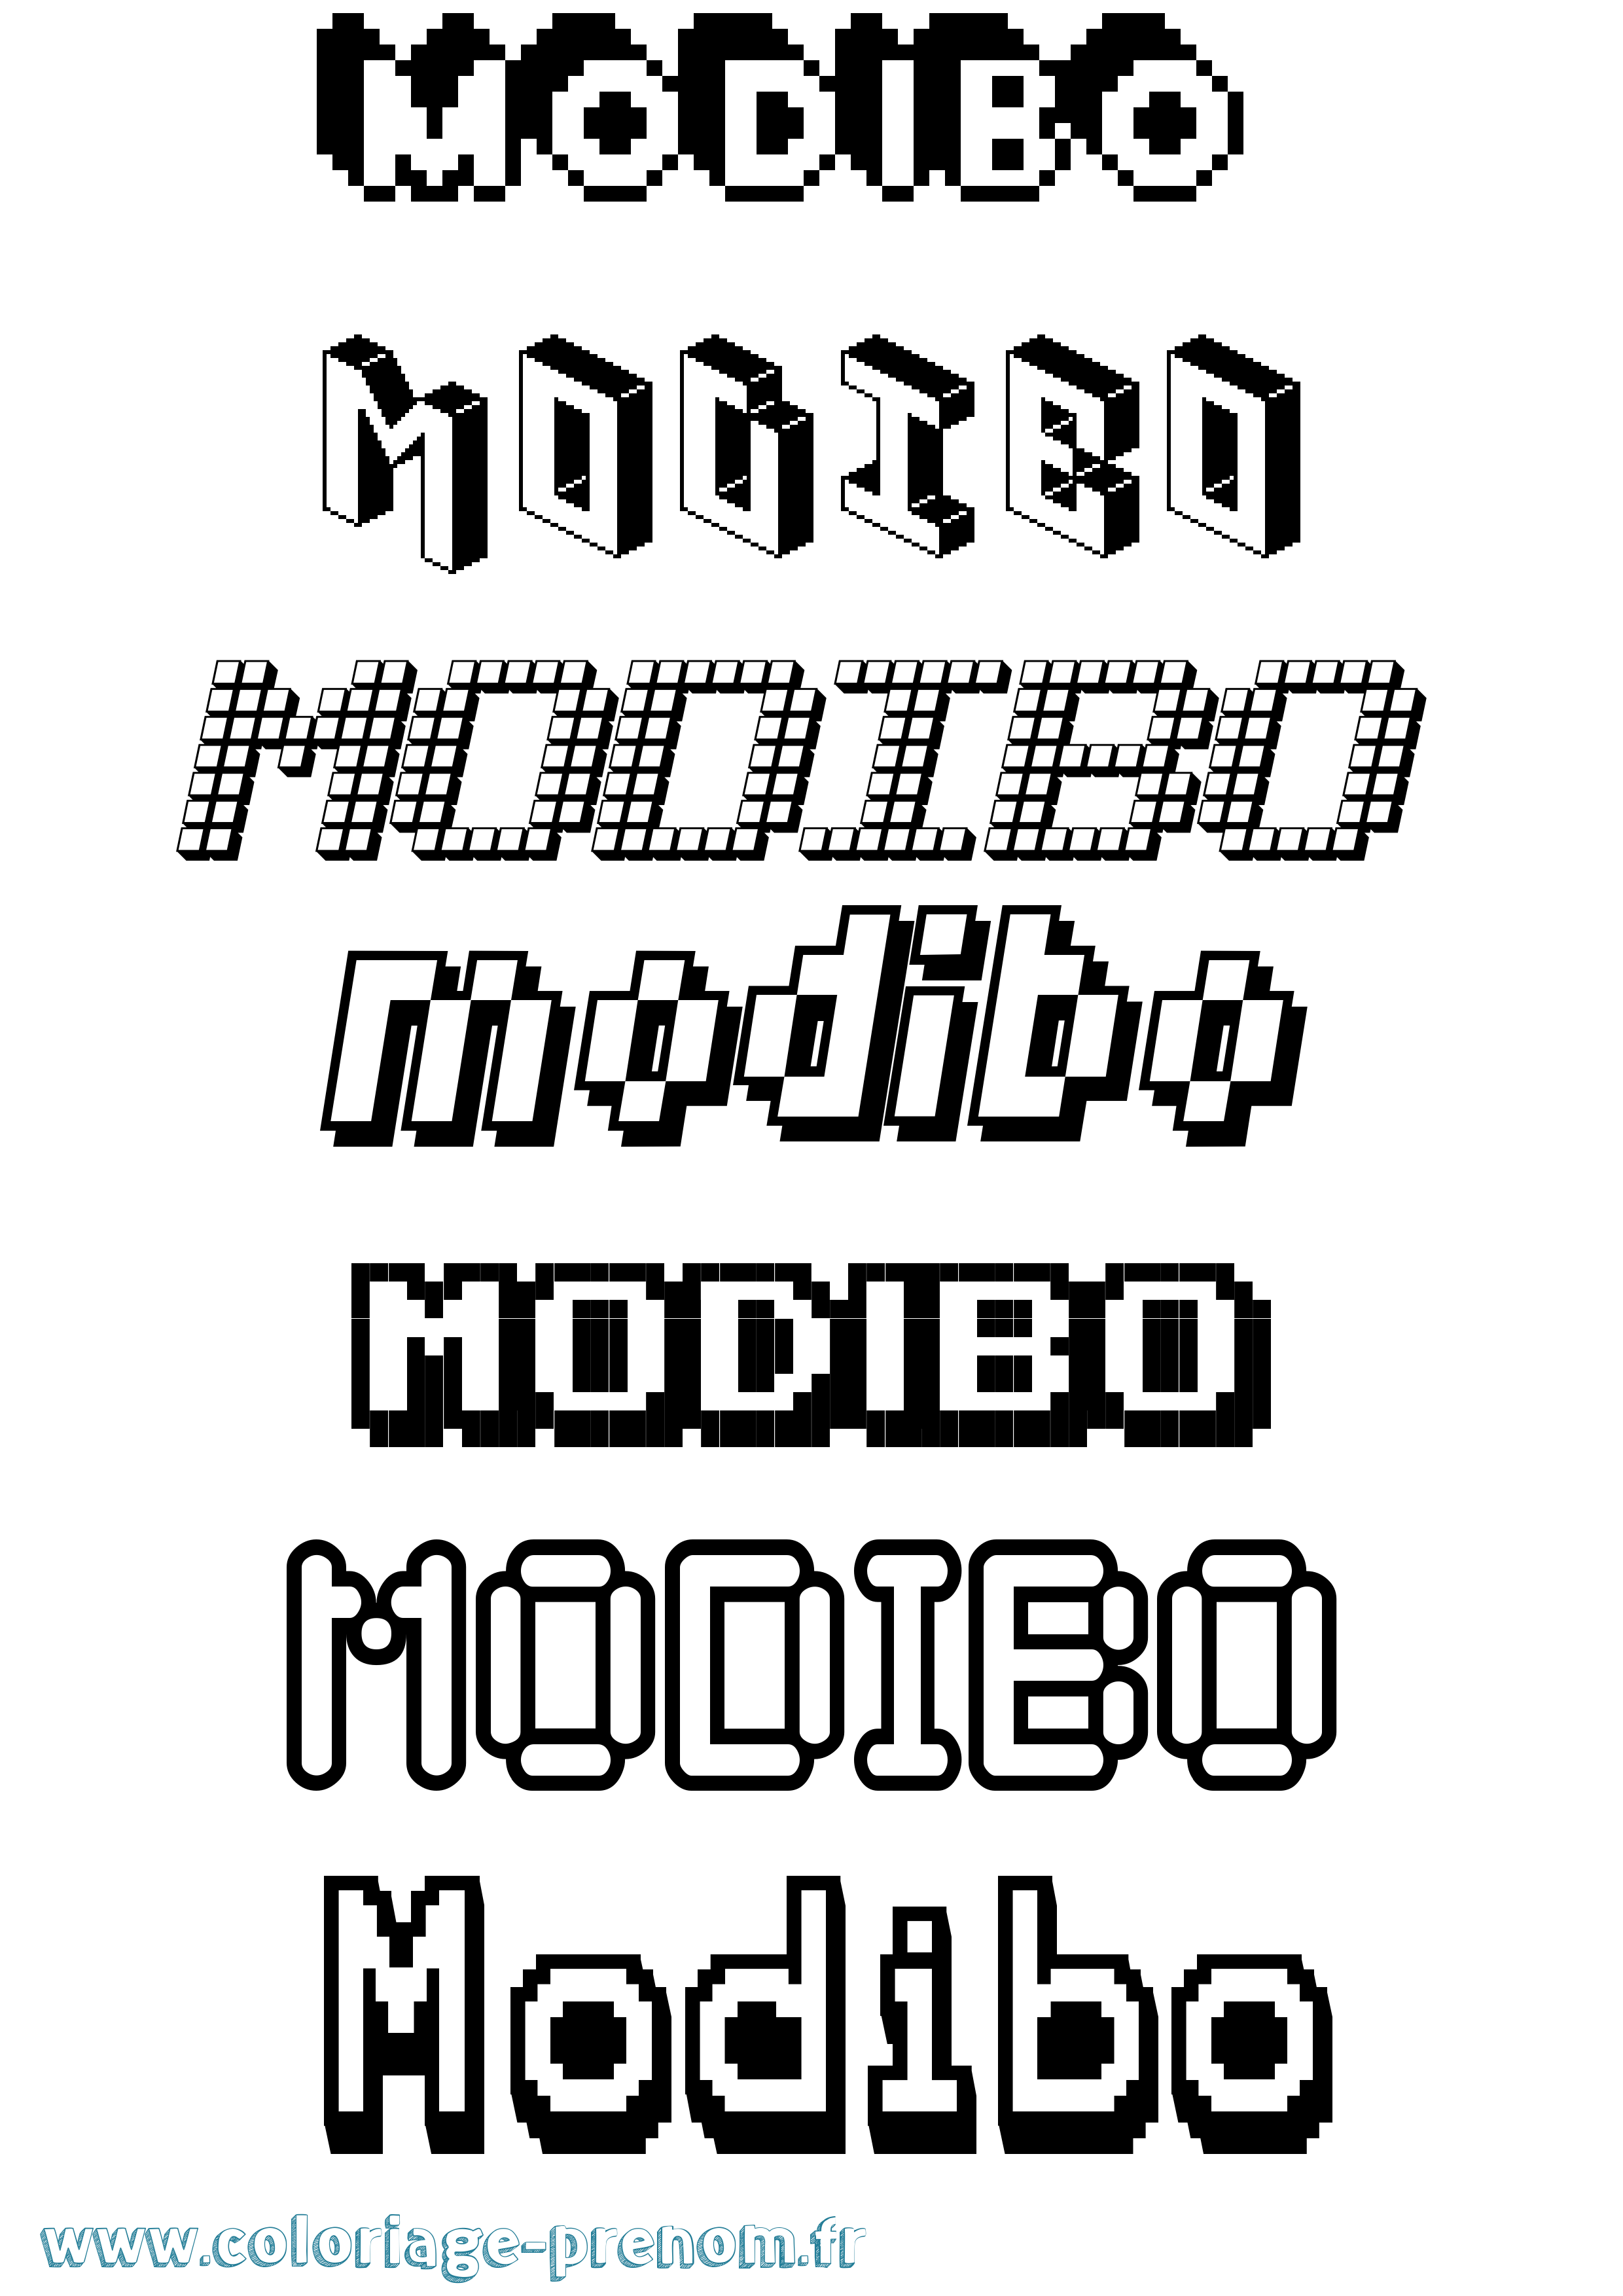 Coloriage prénom Modibo